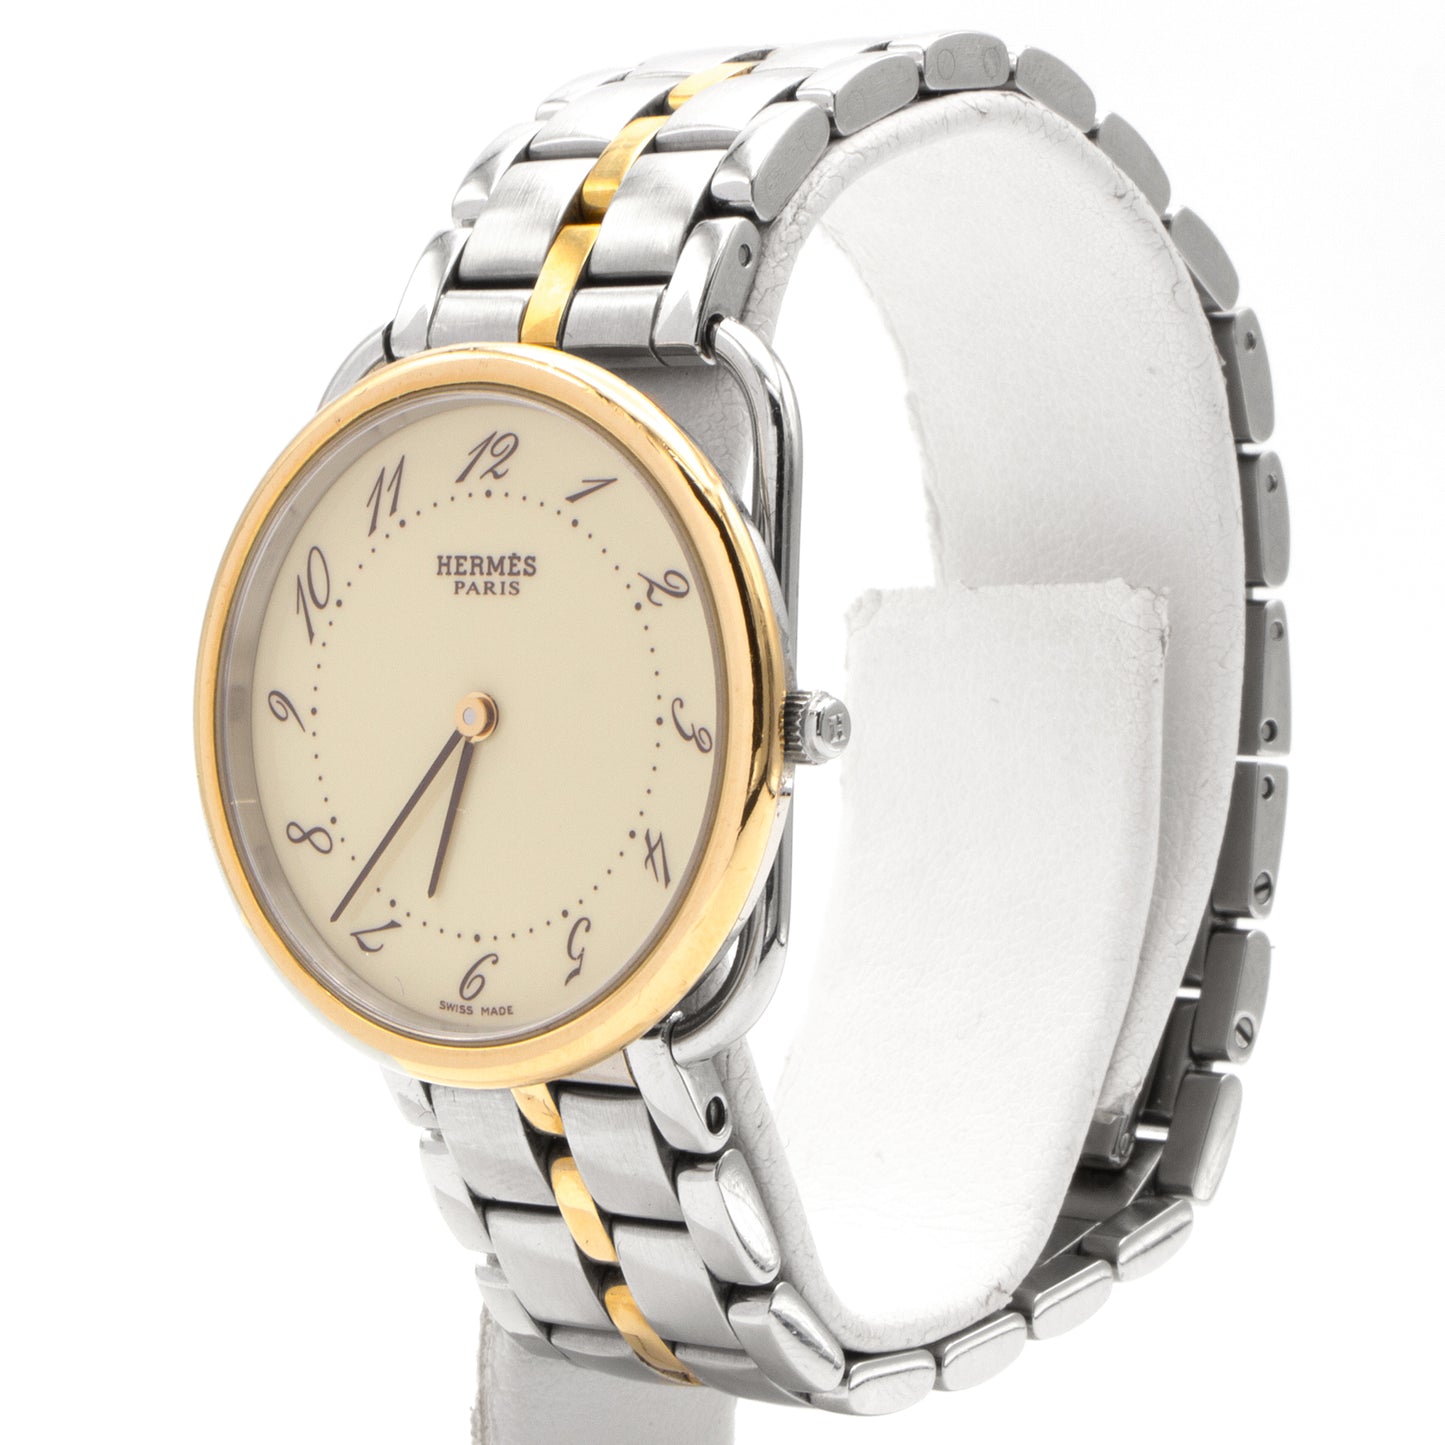 Hermès Arceau AR4.520 30mm watch